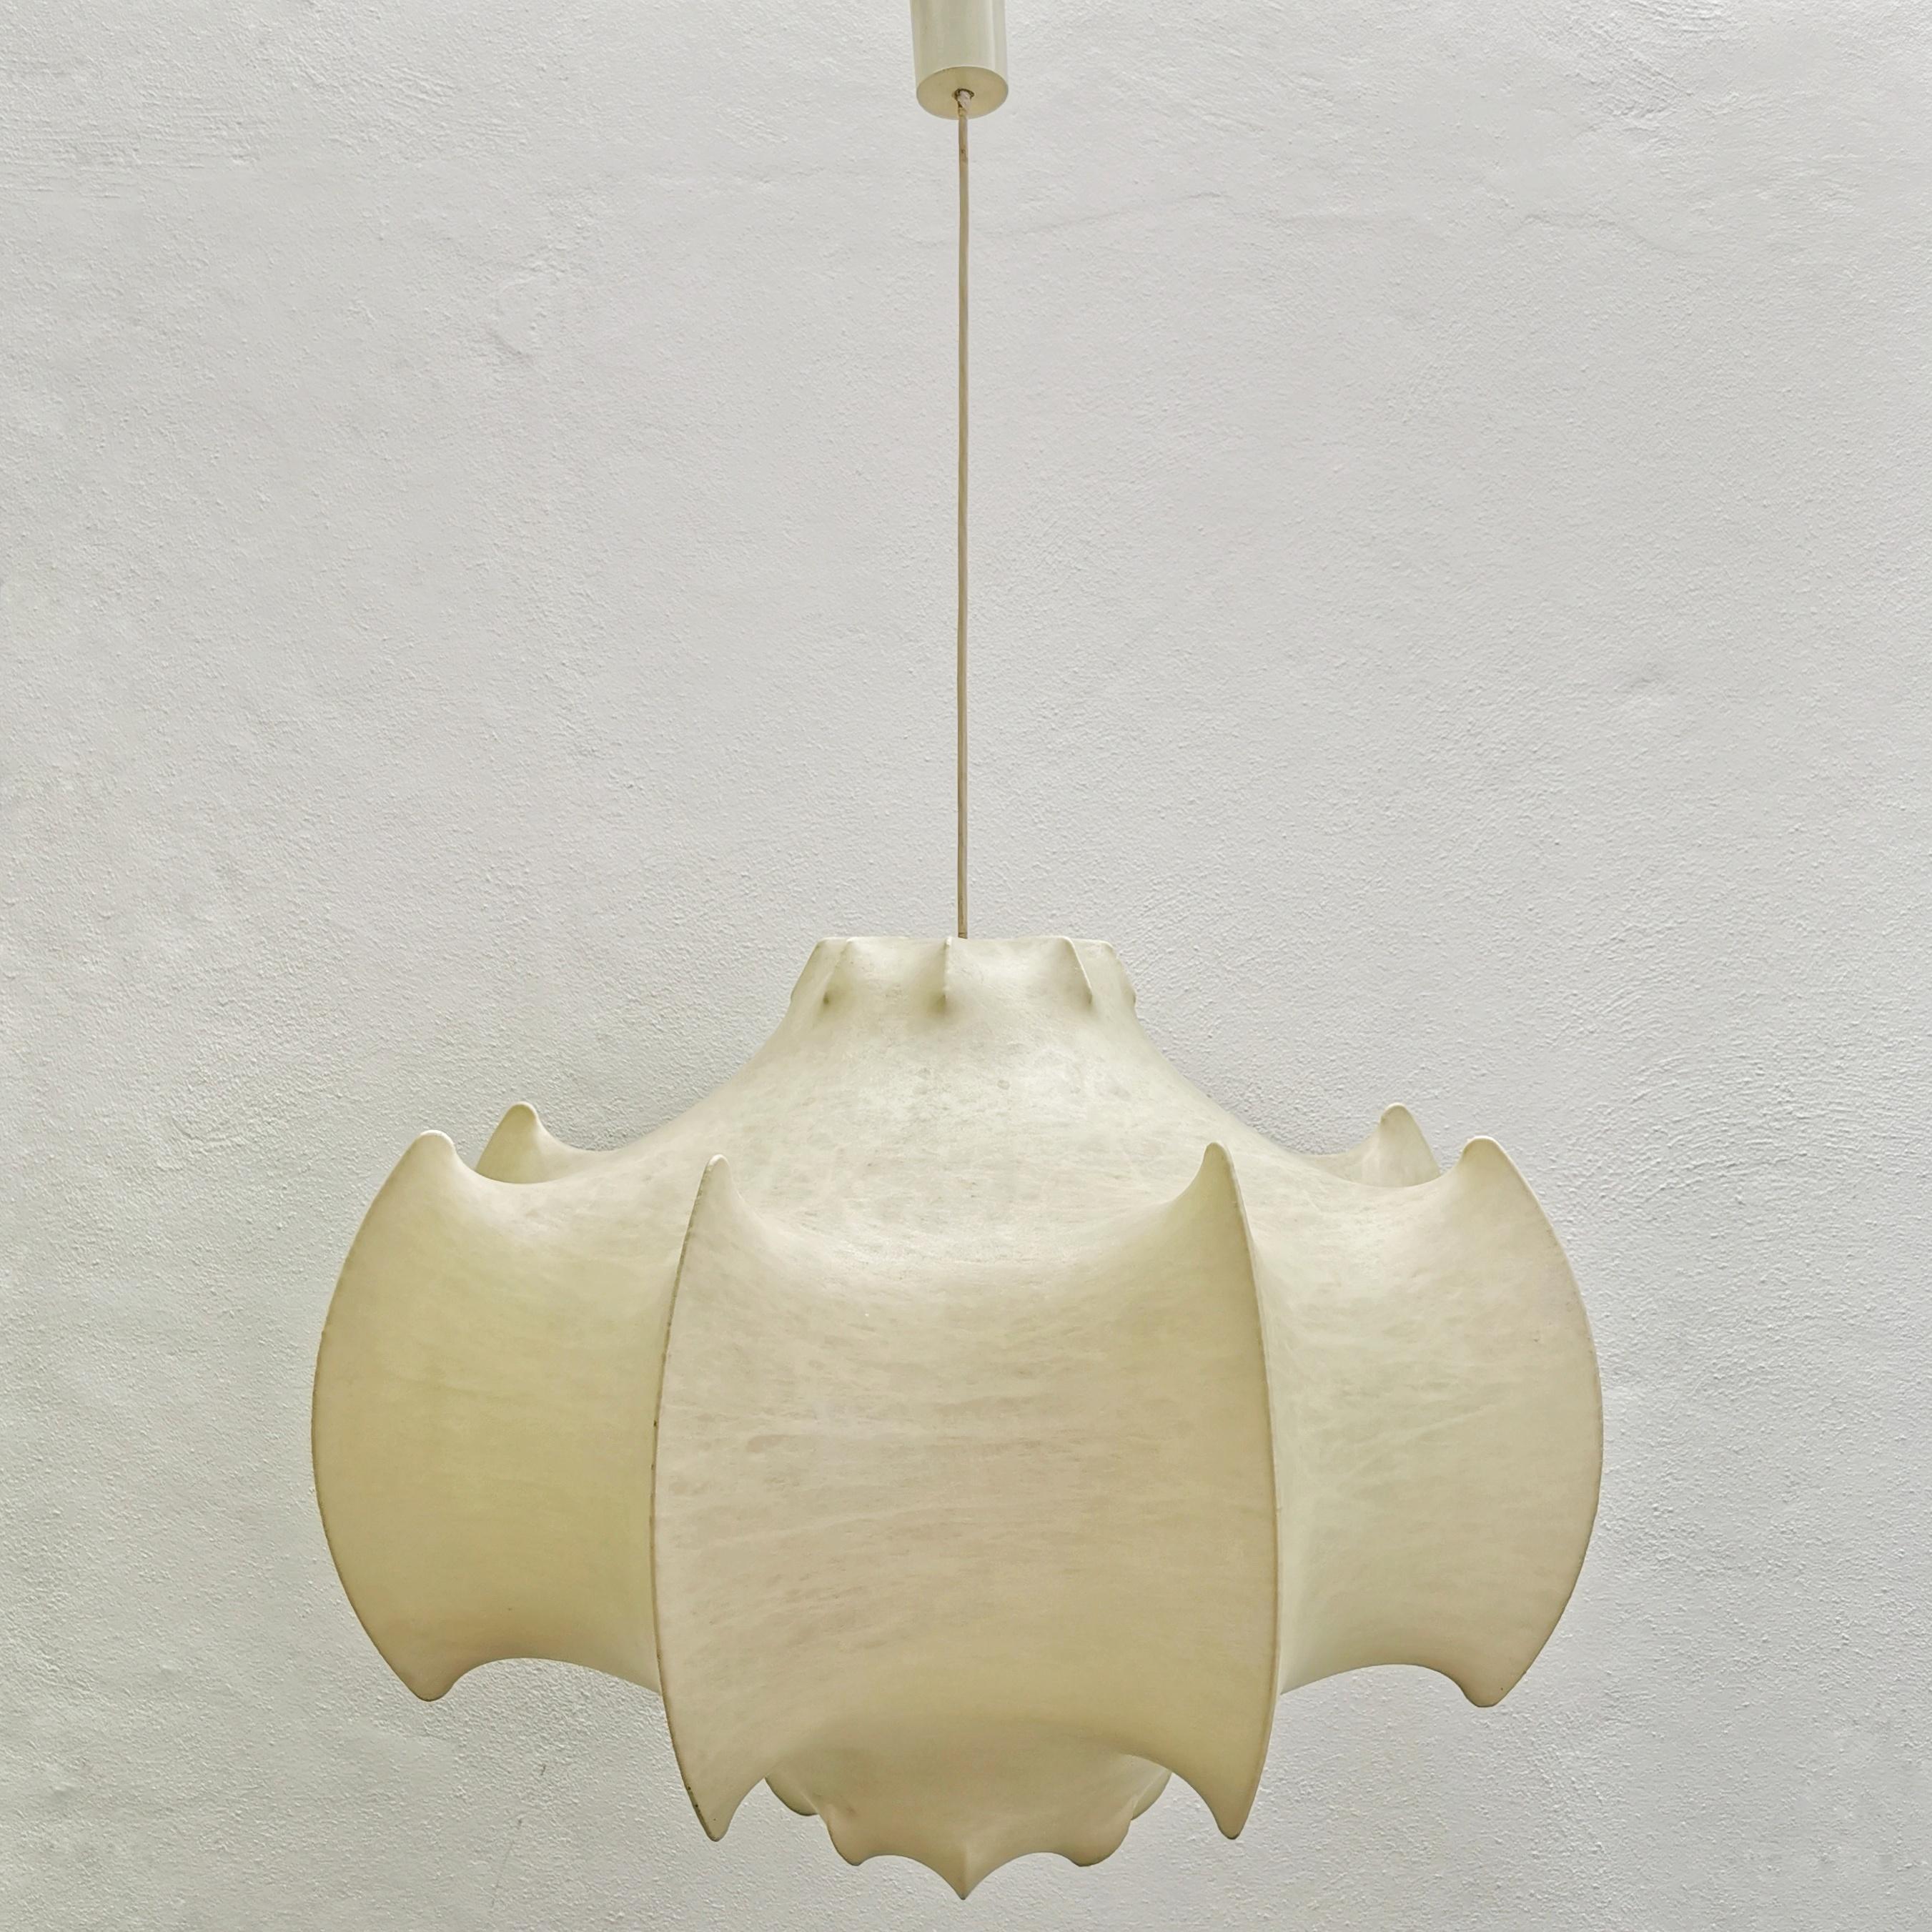 Viscontea è una lampada a sospensione design by Achille Castiglioni and Pier Giacomo Castiglioni in 1960
E' una lampada a luce diffusa che unisce lusso e innovazione. La struttura interna è in acciaio verniciato a polvere bianco, mentre il diffusore